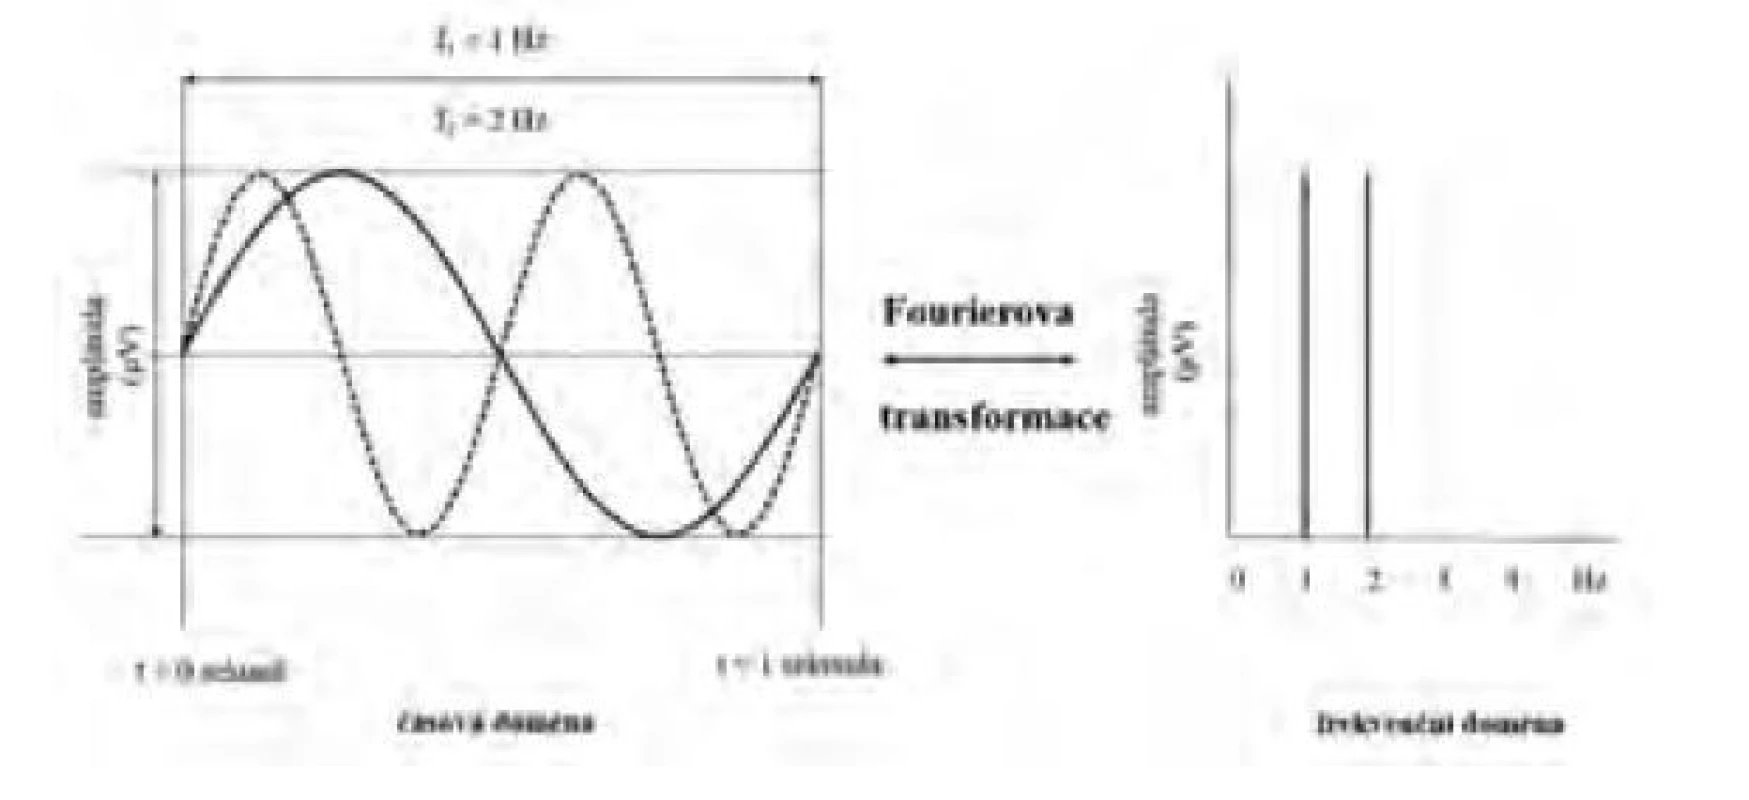 Schéma Fourierovy transformace dvou sinusoid s frekvencemi
1 a 2 Hz se stejnou amplitudou a fází z časové do frekvenční domény